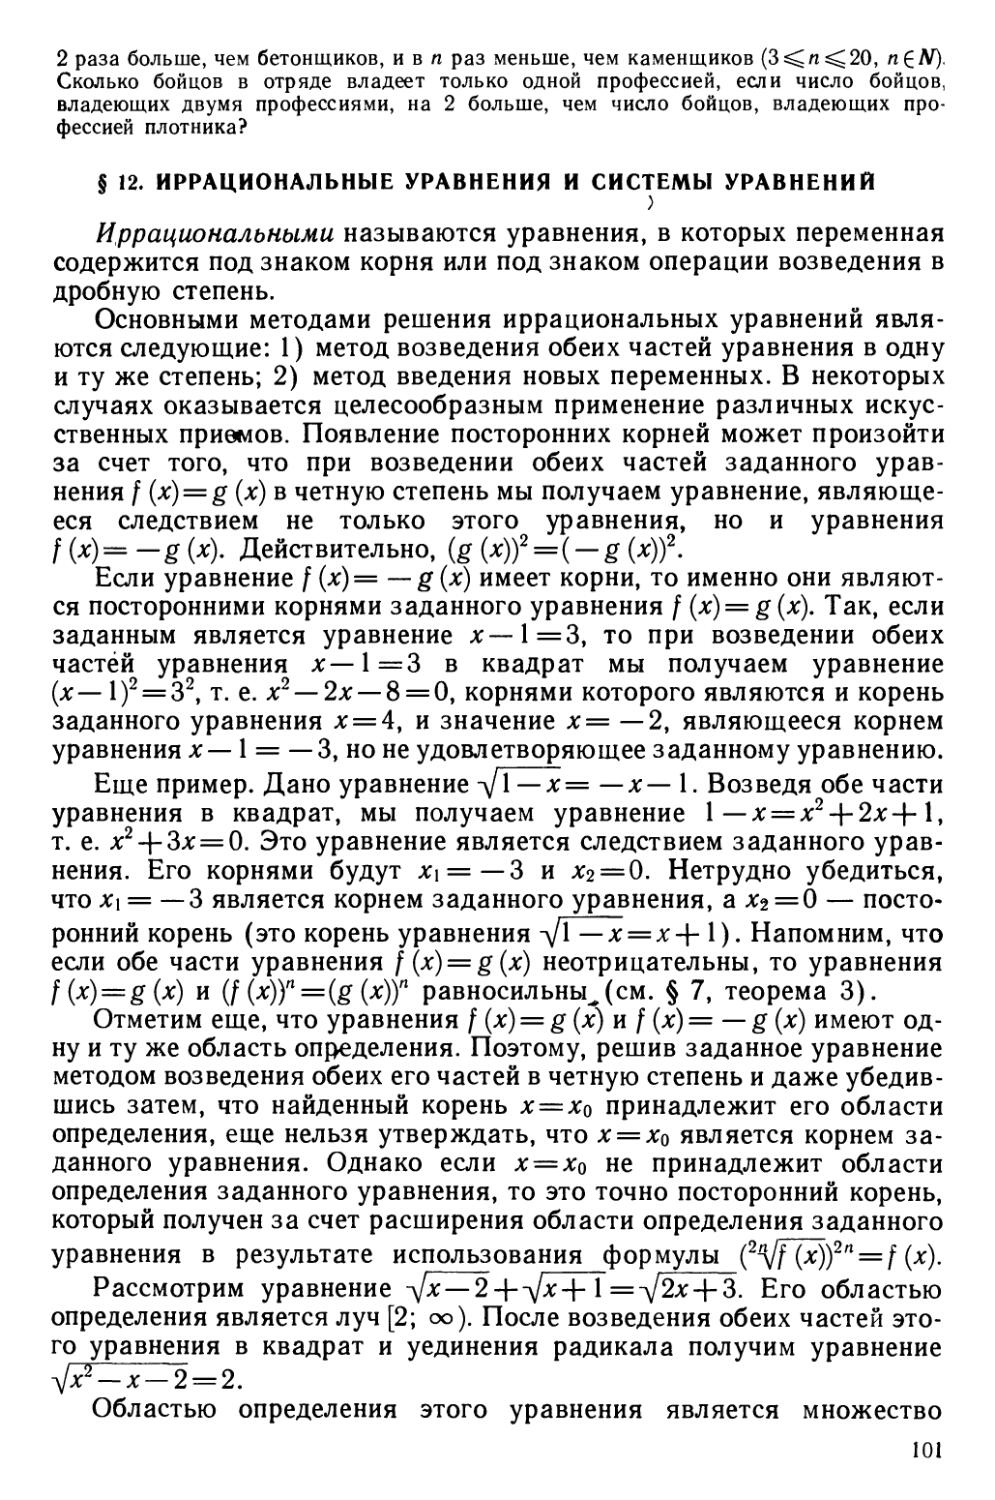 § 12 Иррациональные уравнения и системы уравнений